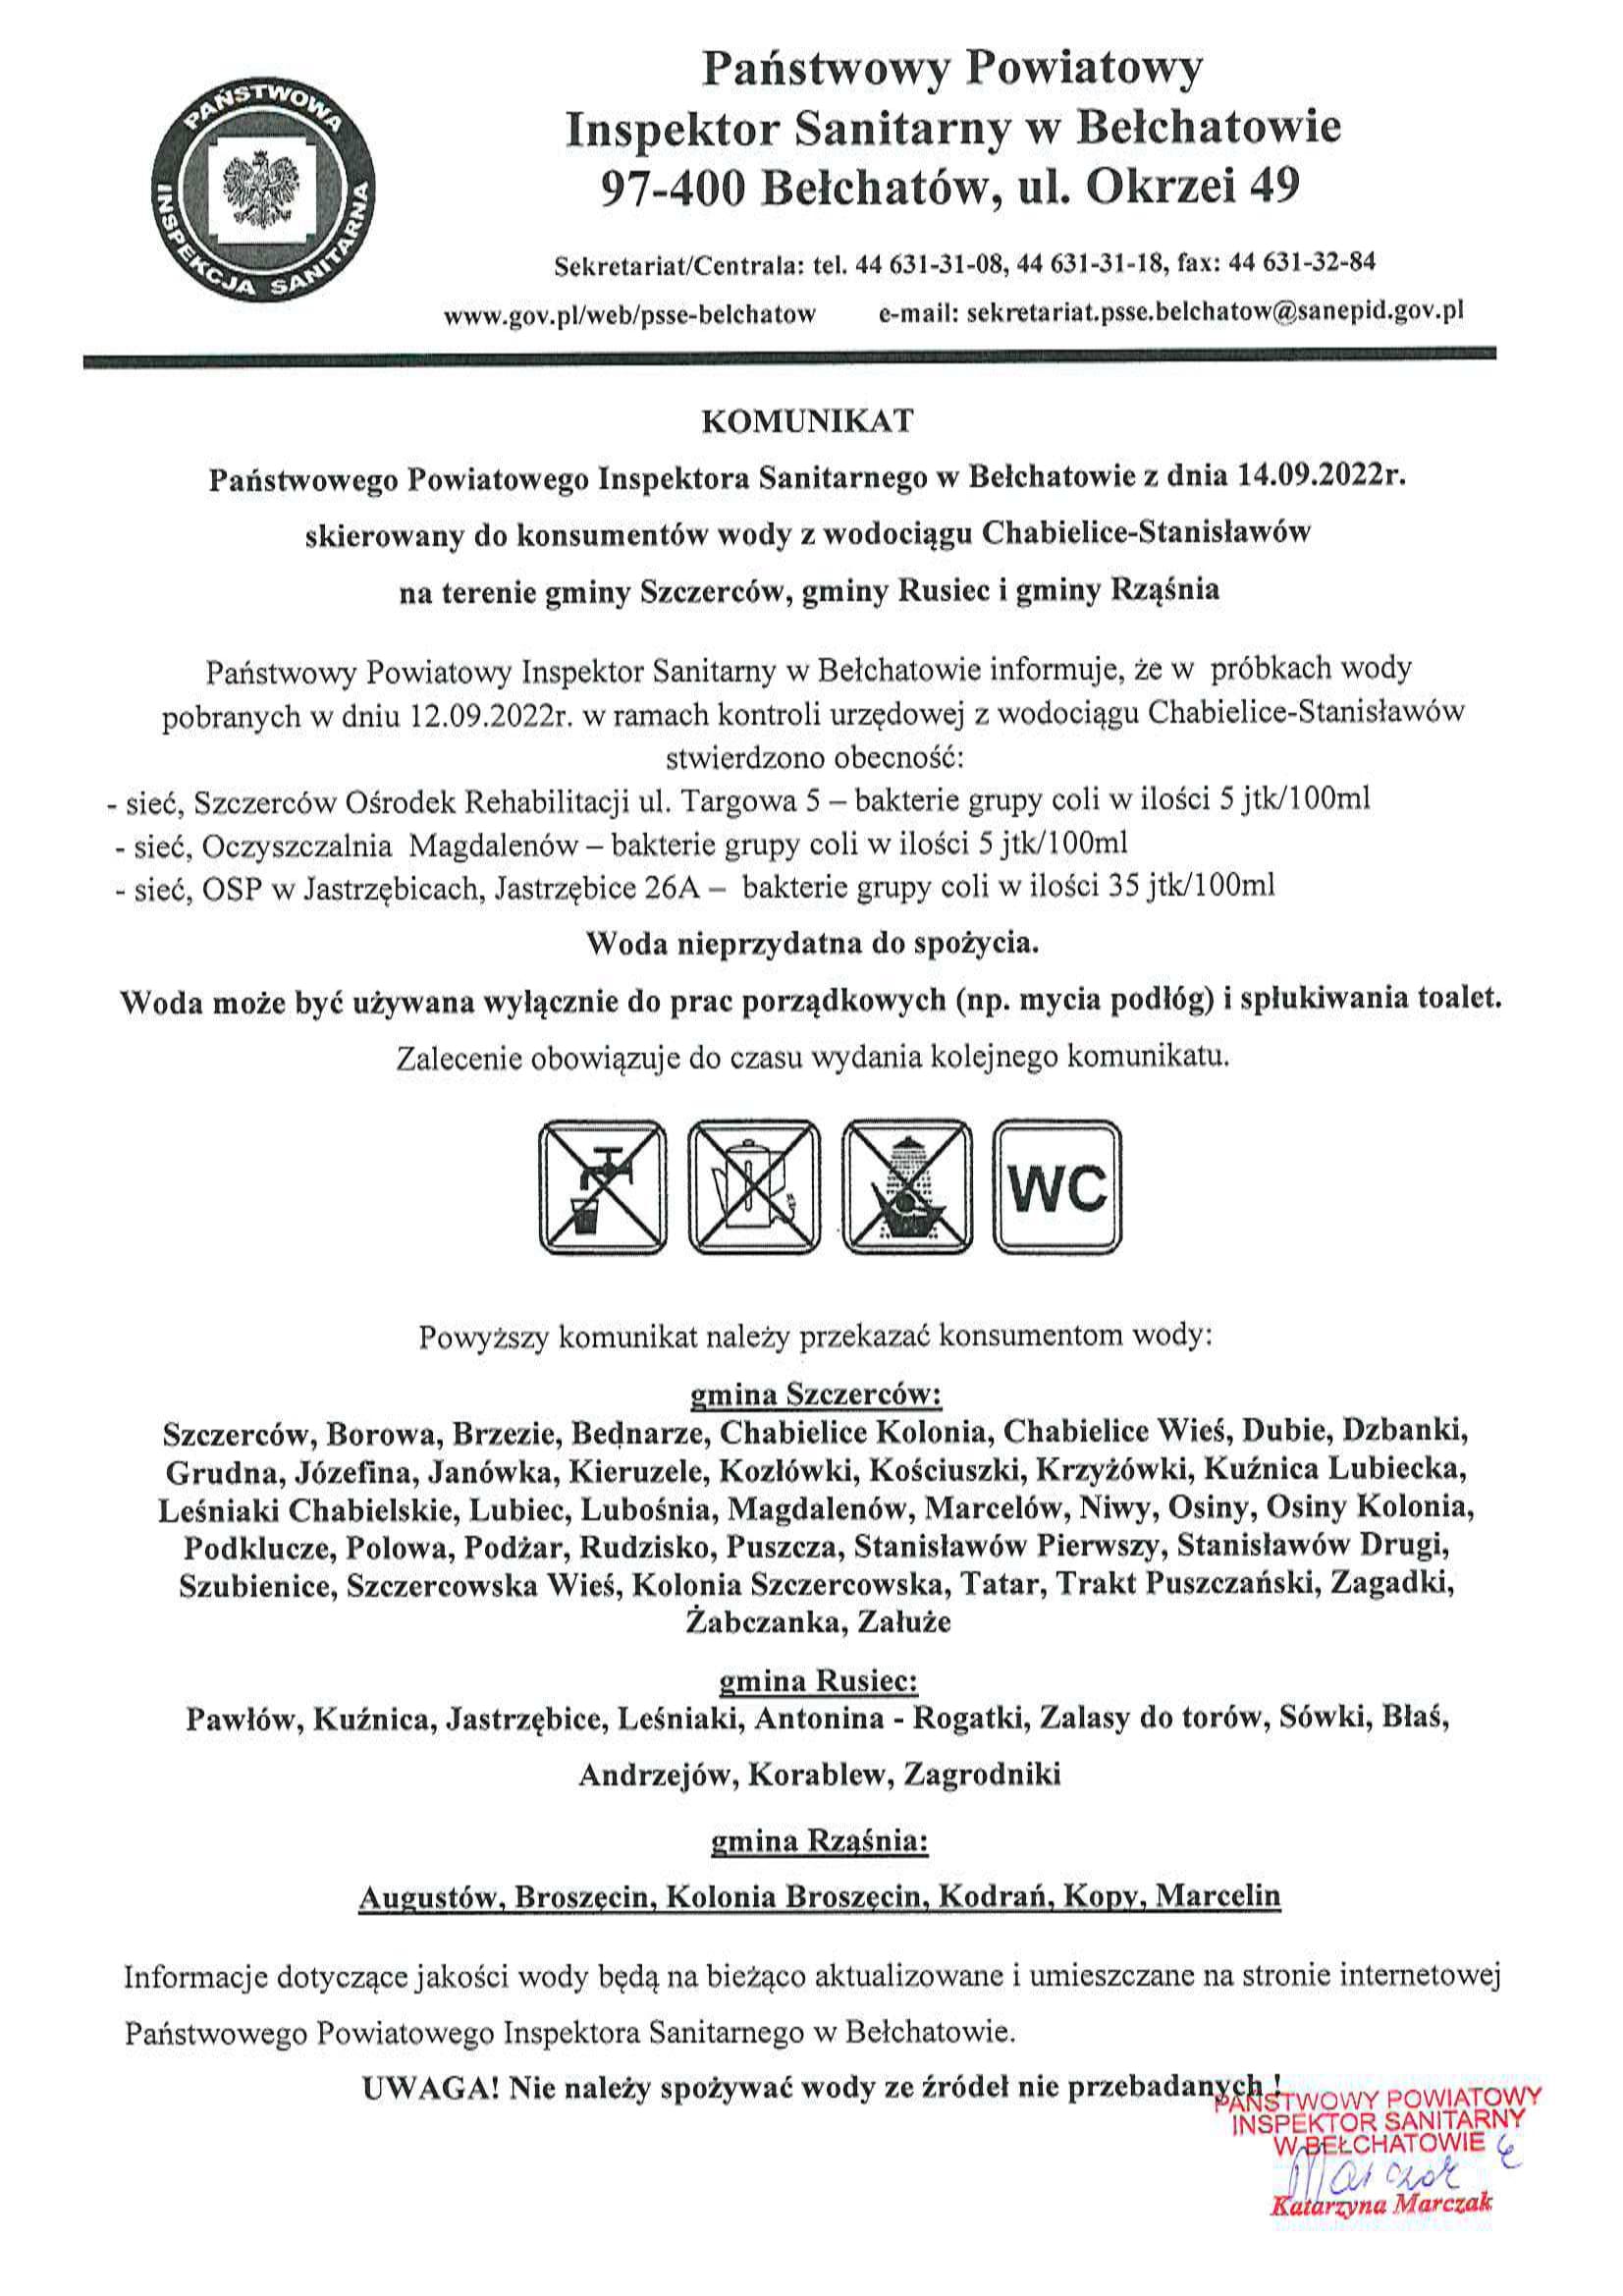 Komunikat PPIS w Bełchatowie z dnia 14.09.2022 r. skierowany do konsumentów wody z wodociągu Chabielice